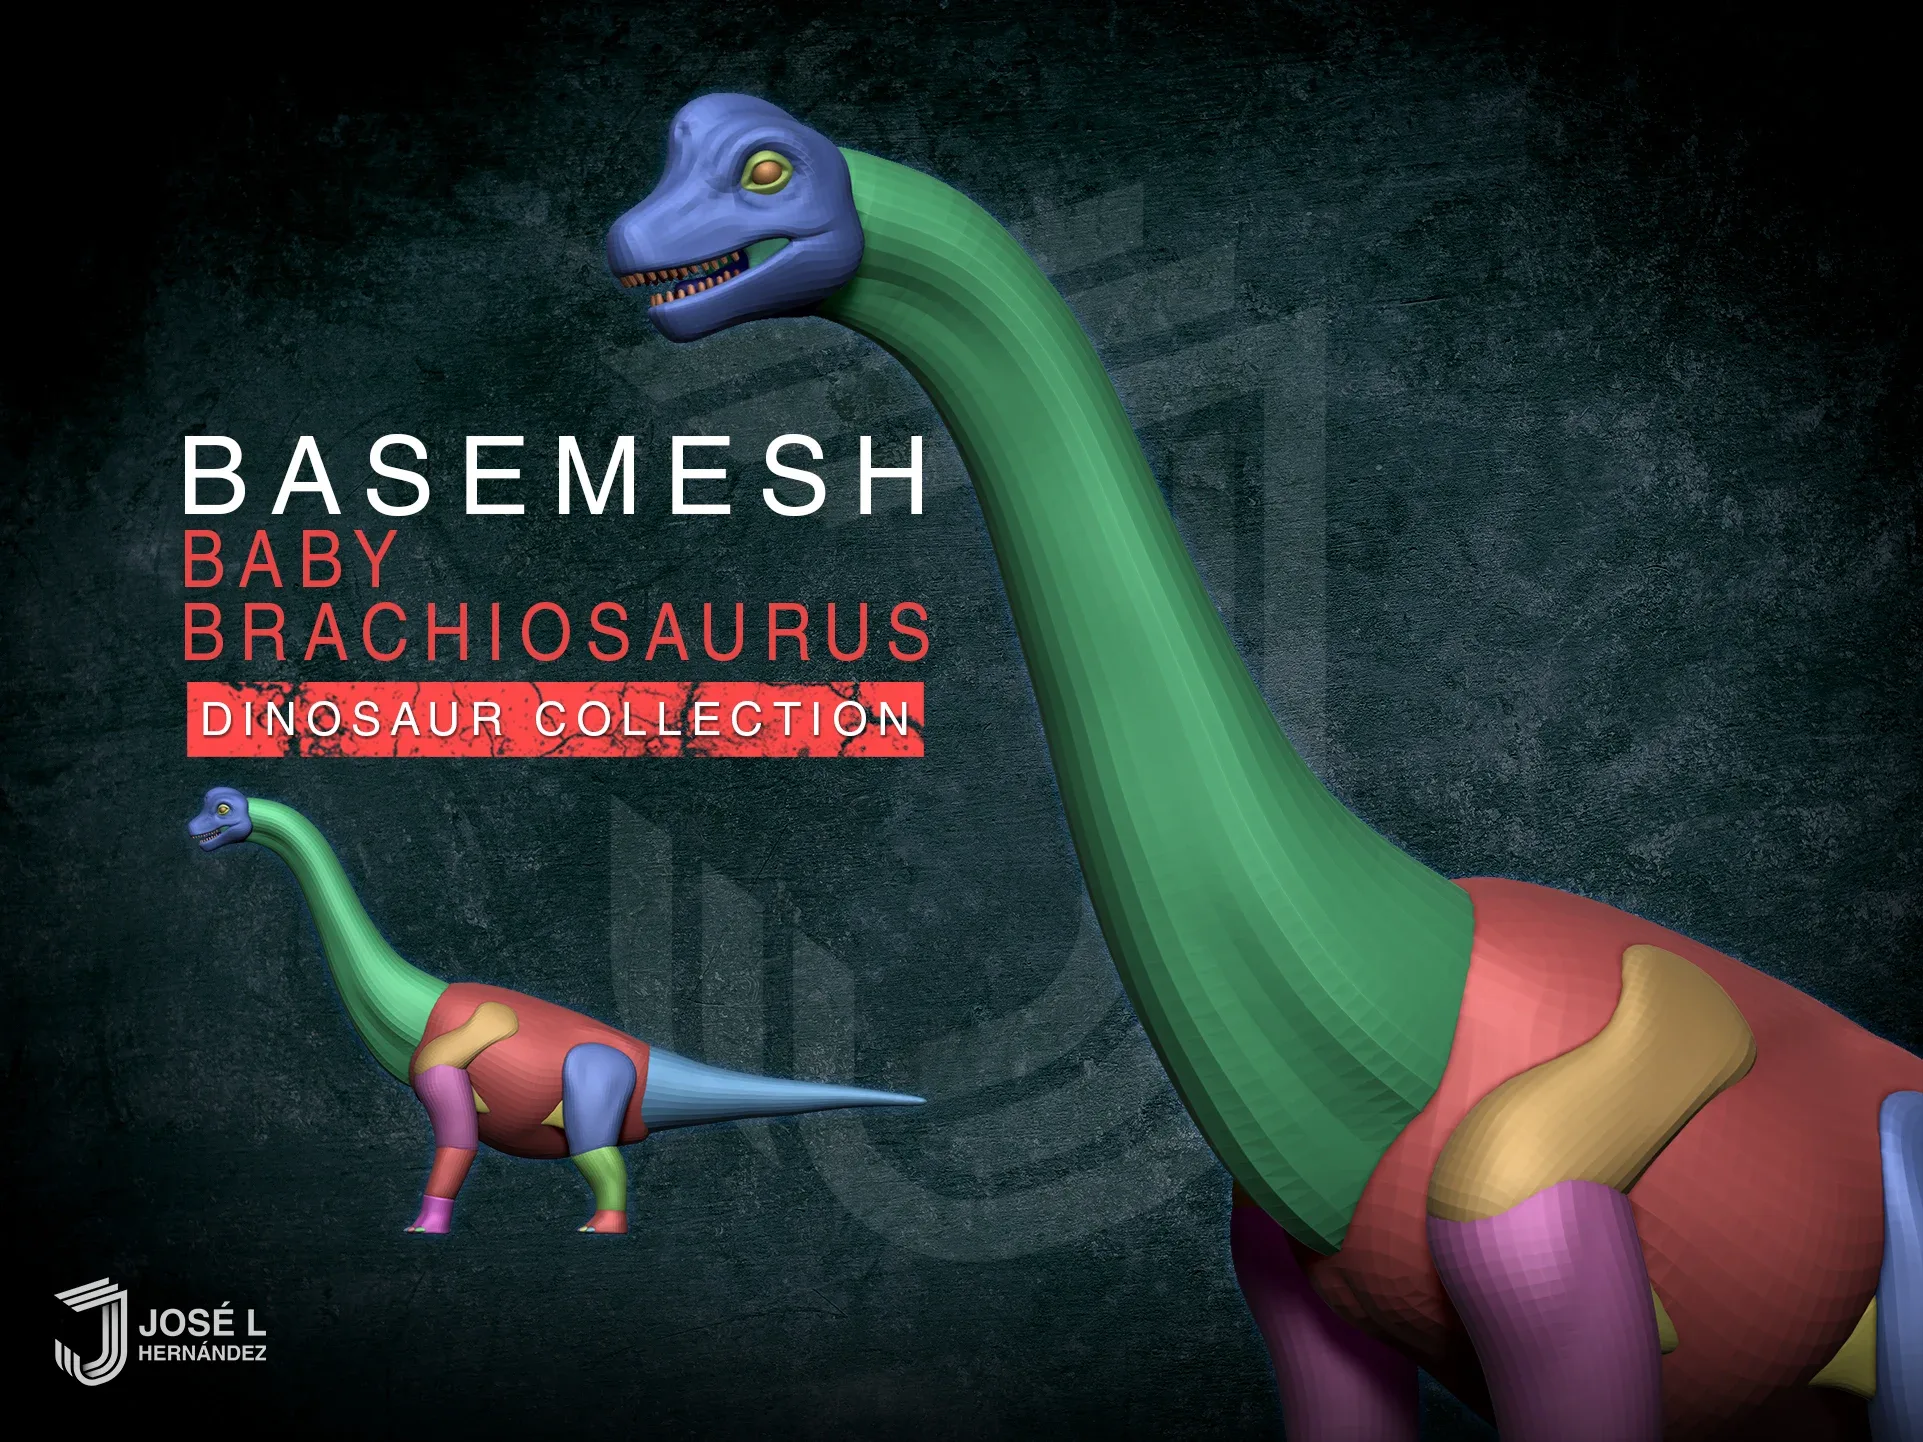 Basemesh Baby Brachiosaurus